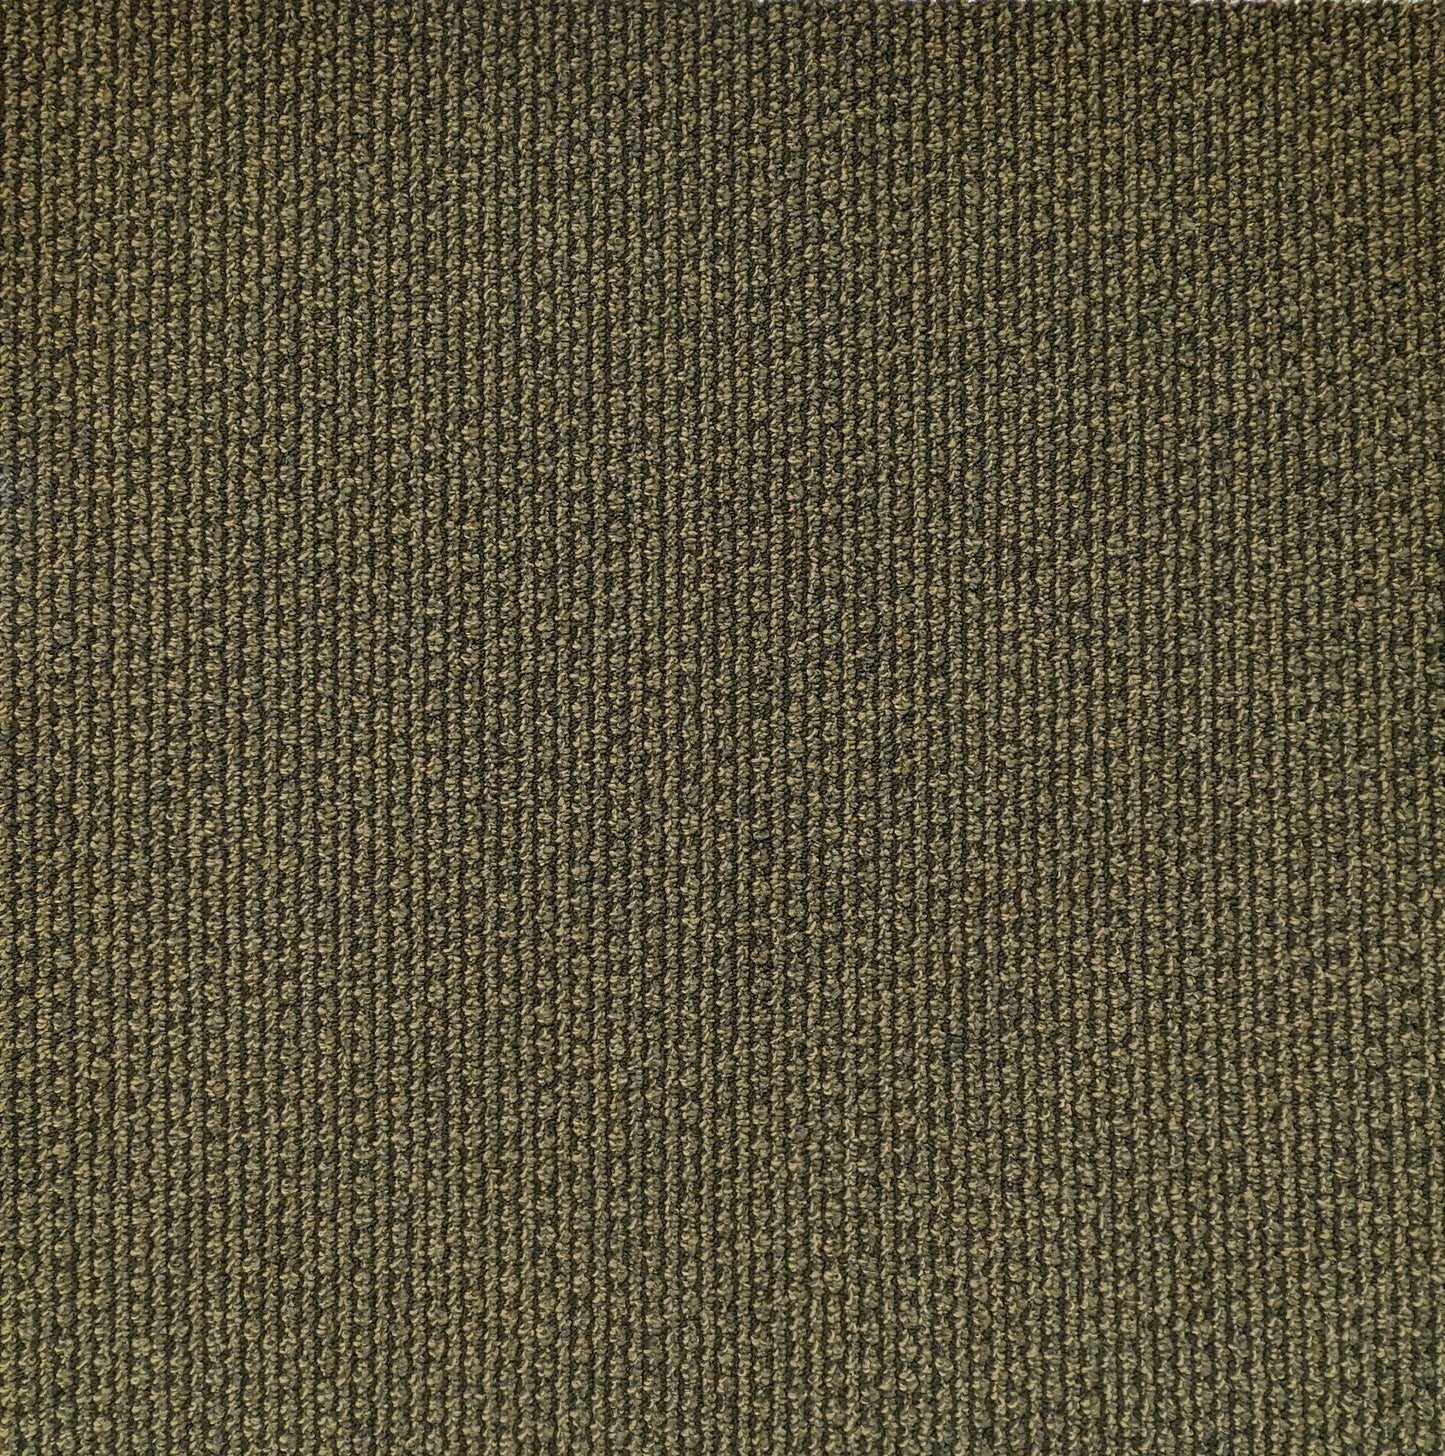 Shaw Welsh Carpet Tile-24"x 24"(12 Tiles/case, 48 sq. ft./case)